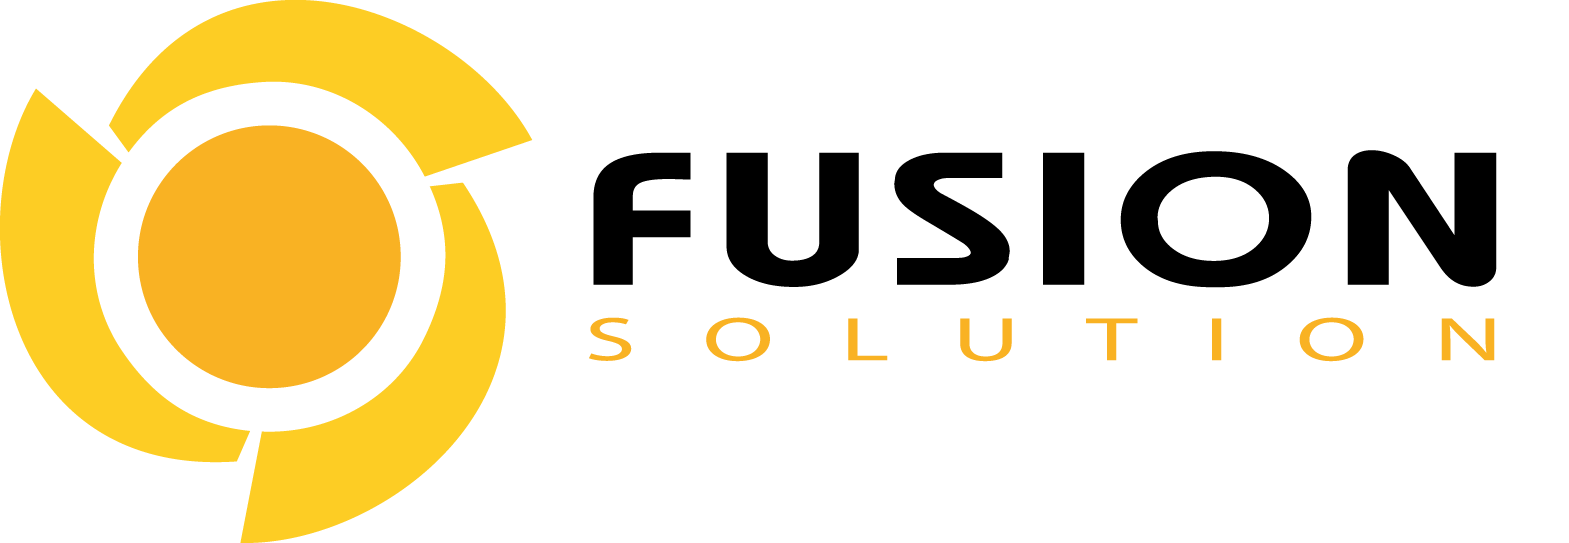 บริษัท ฟิวชั่น โซลูชั่น จำกัด logo โลโก้